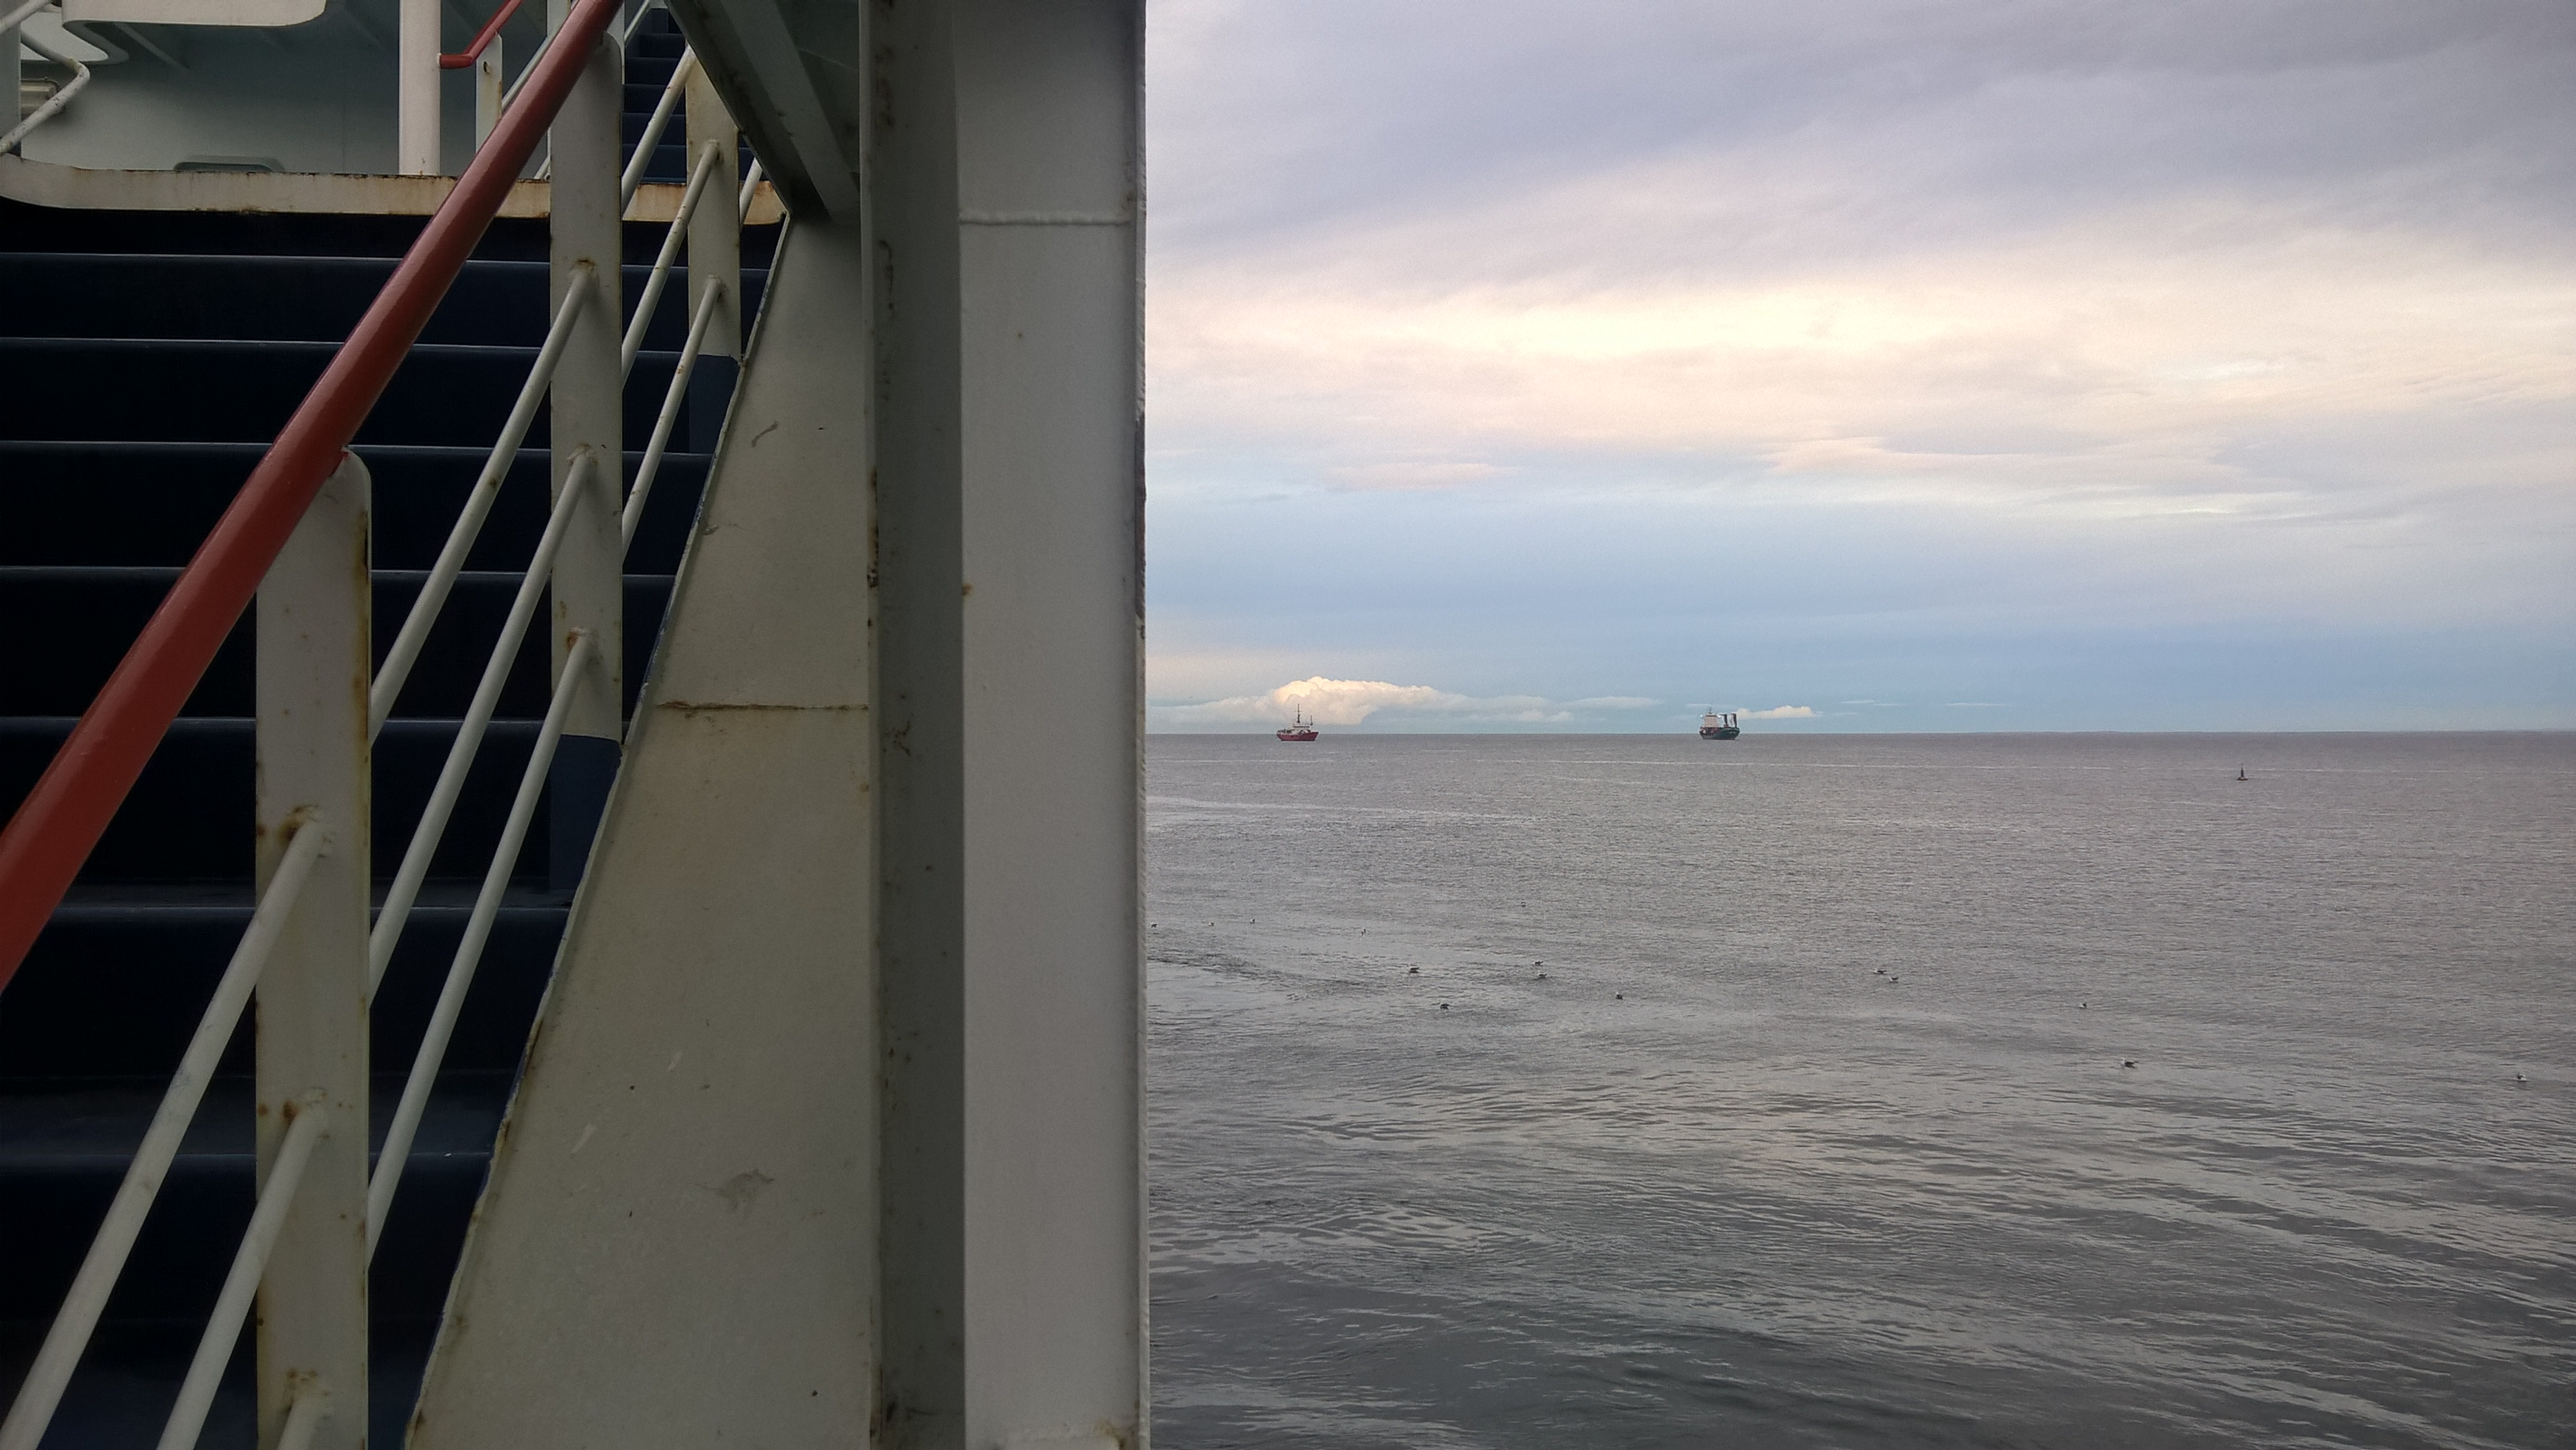 2018-02-04 21-01-07 Ca08 A2 llegando con el ferry a Punta Arenas, CHILE